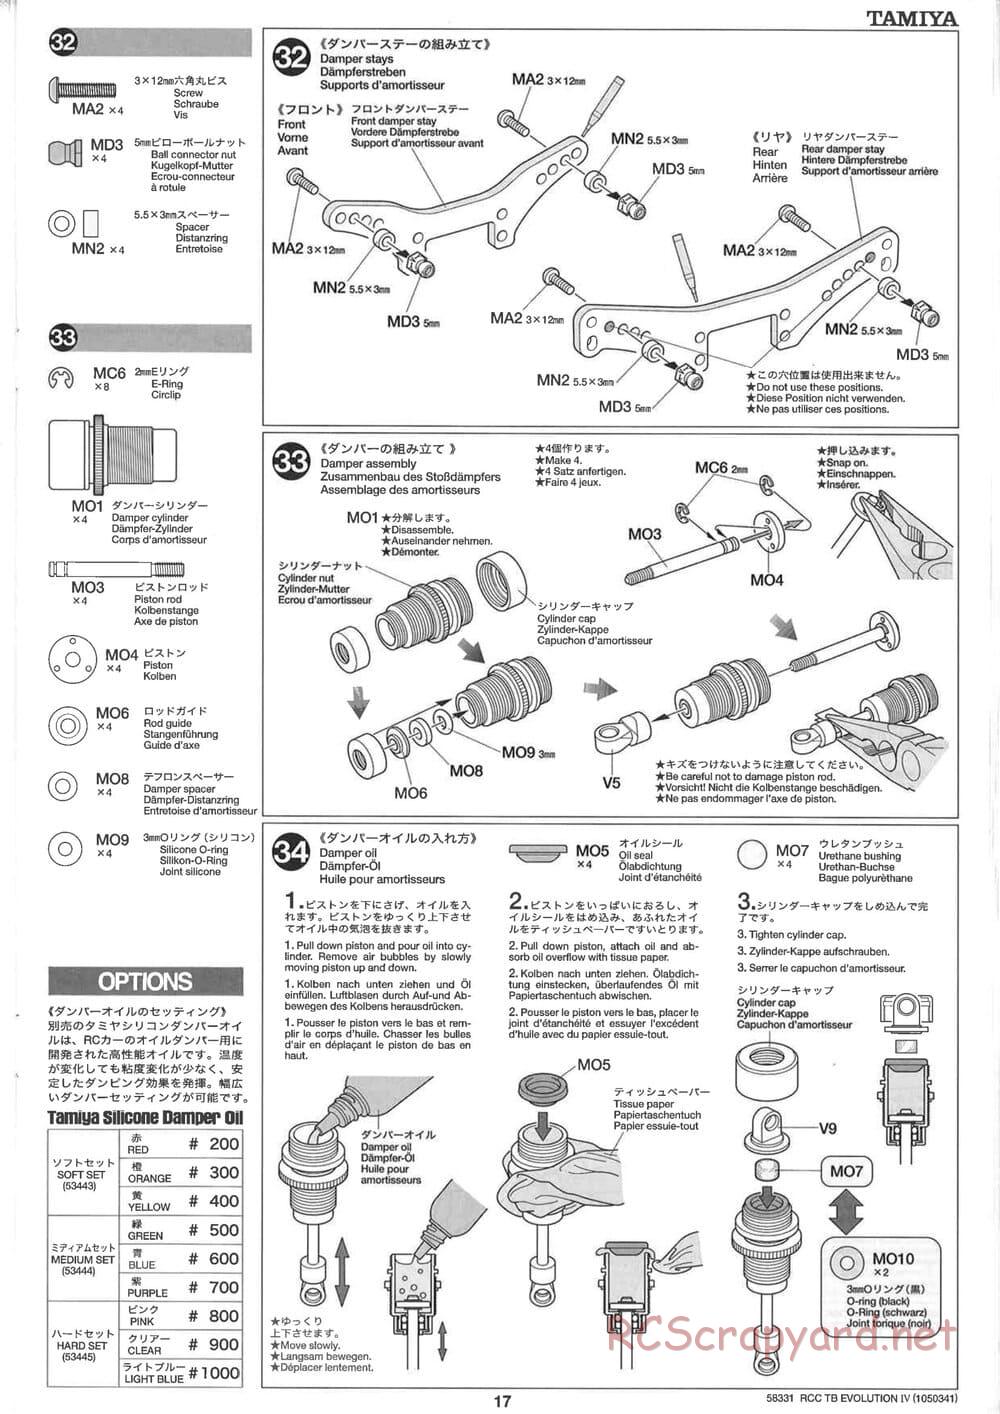 Tamiya - TB Evolution IV Chassis - Manual - Page 17